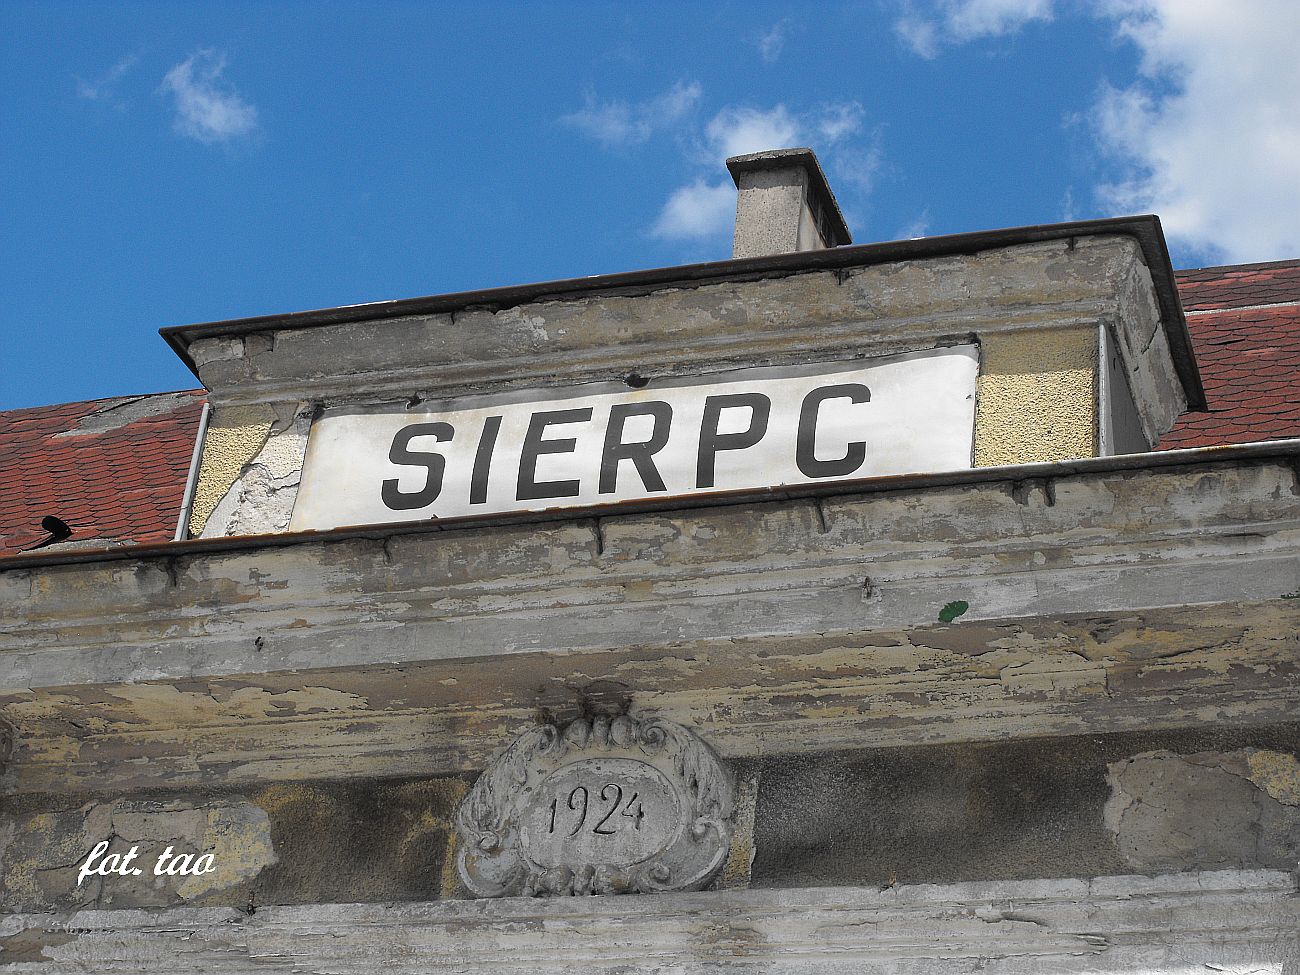 Stacja Sierpc. 2014-1924=90 - to już tyle lat. Pamiętamy, ale czy 